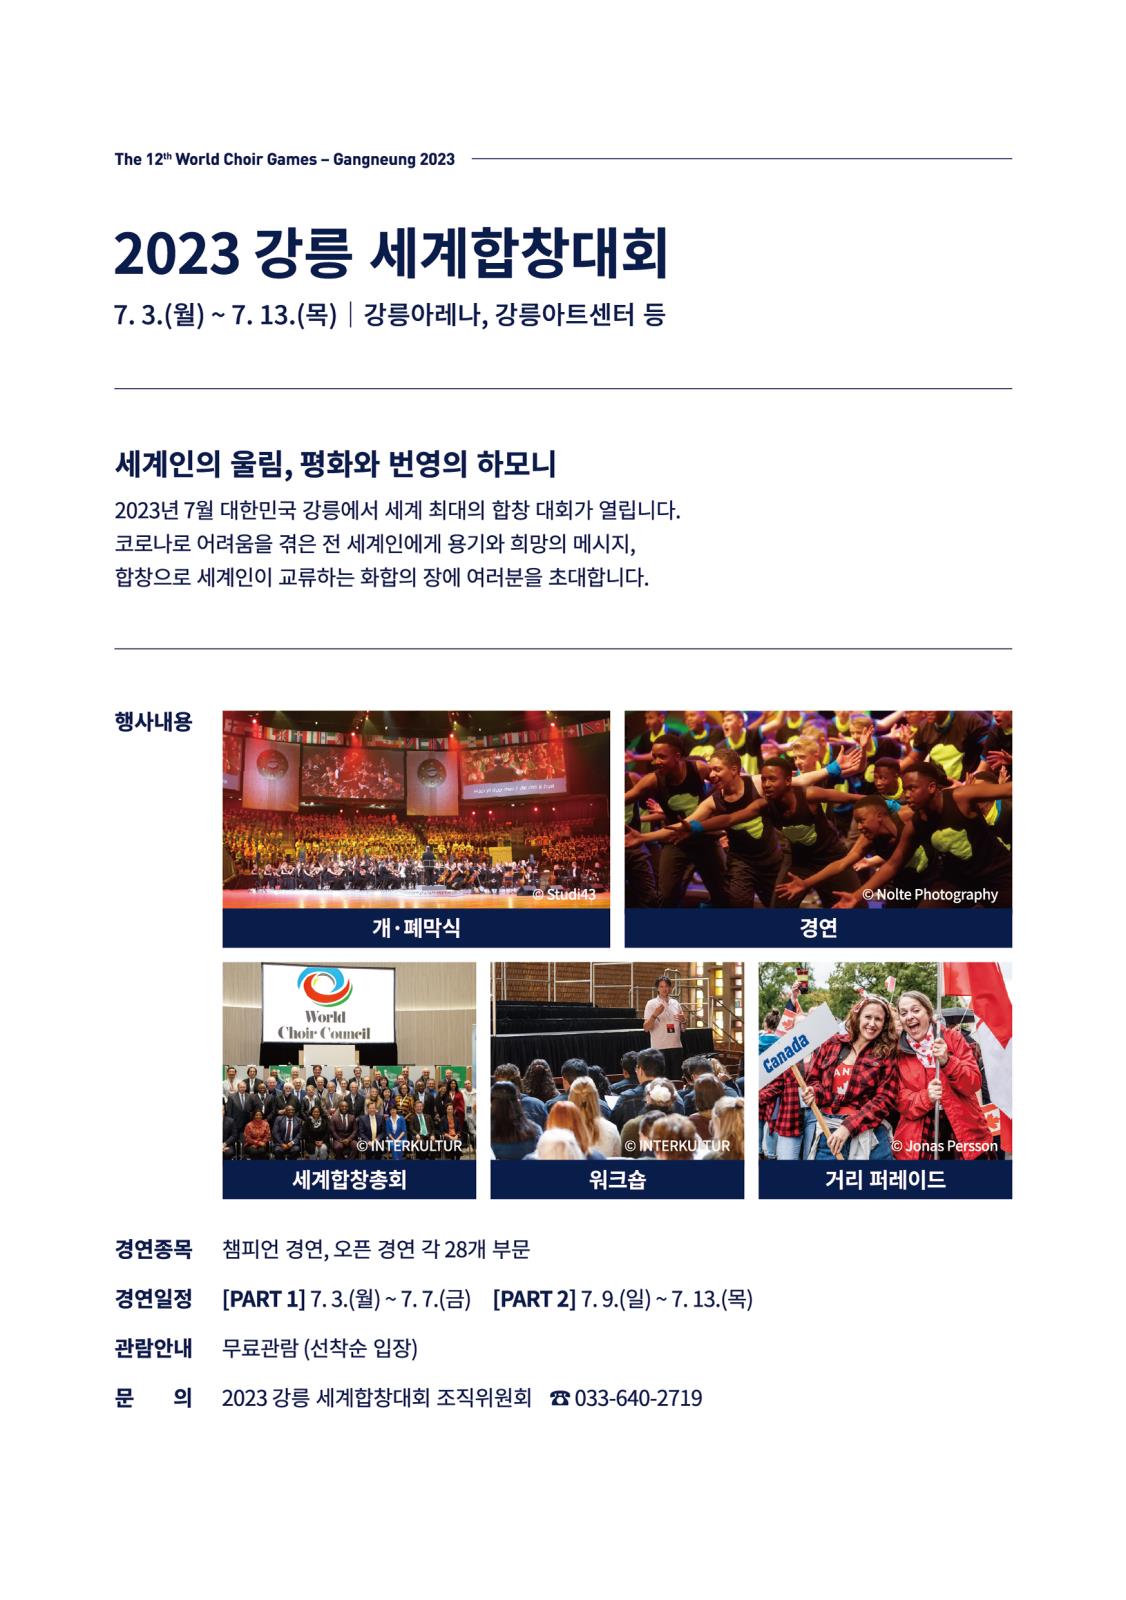 2023강릉세계합창대회 개최안내의 1번째 이미지